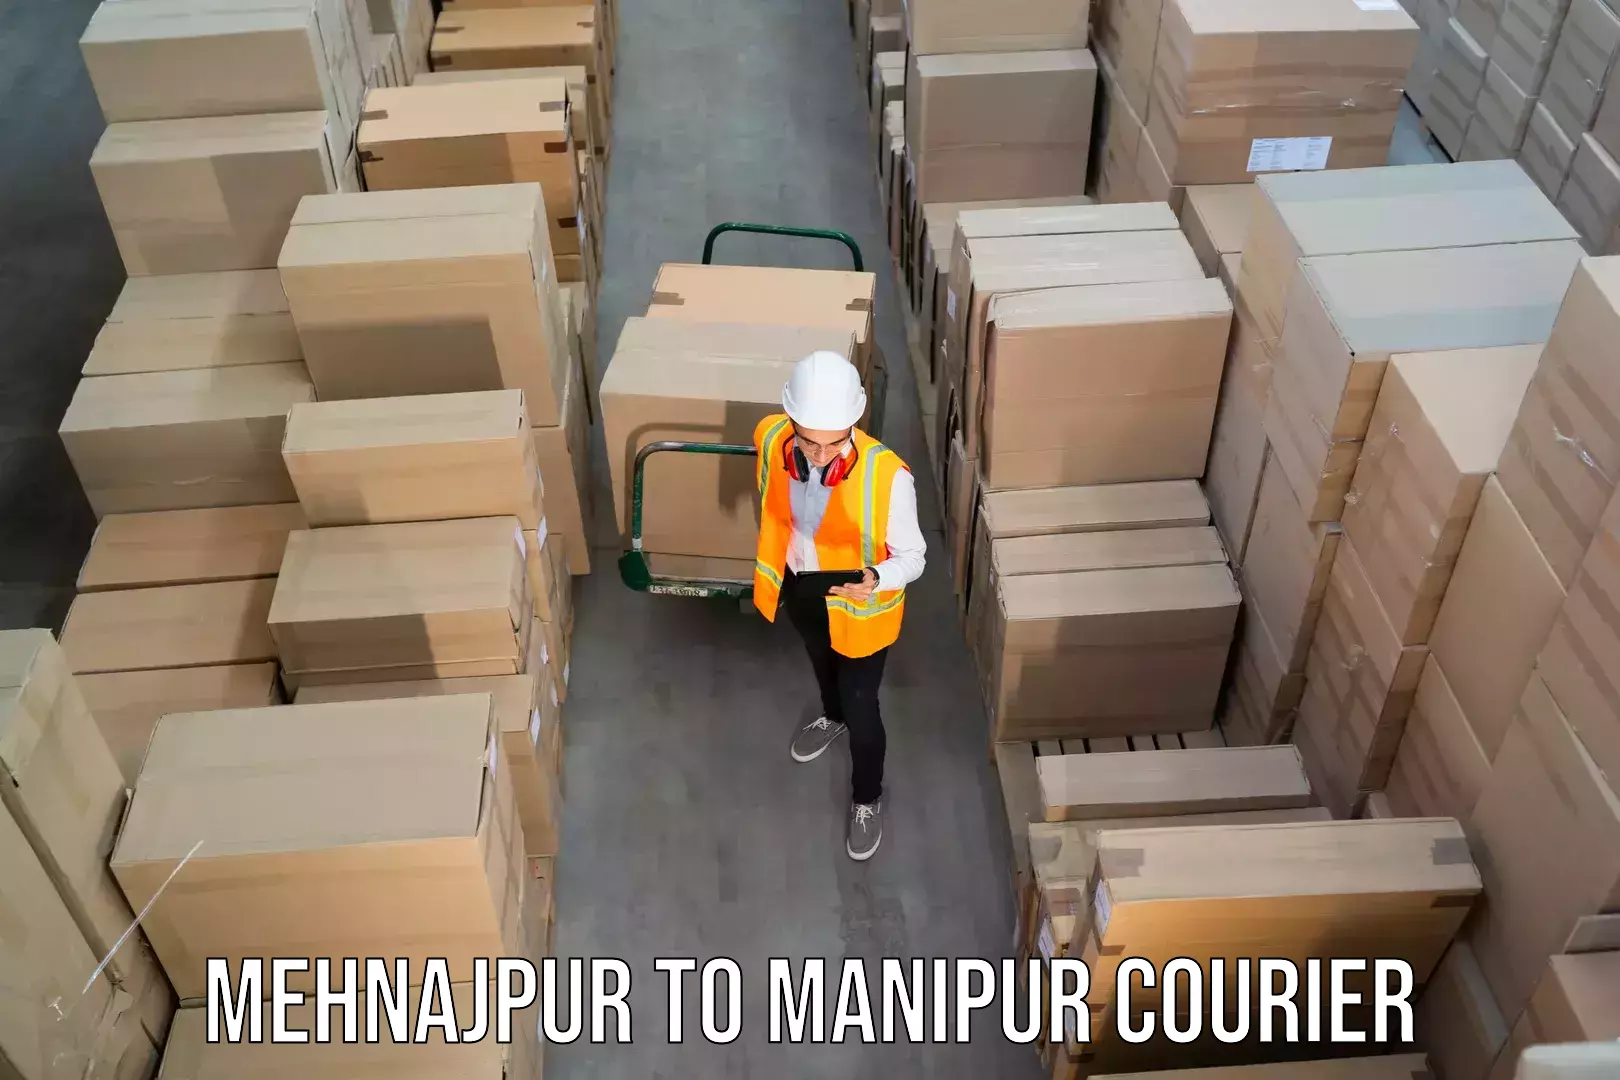 Door-to-door freight service Mehnajpur to Imphal